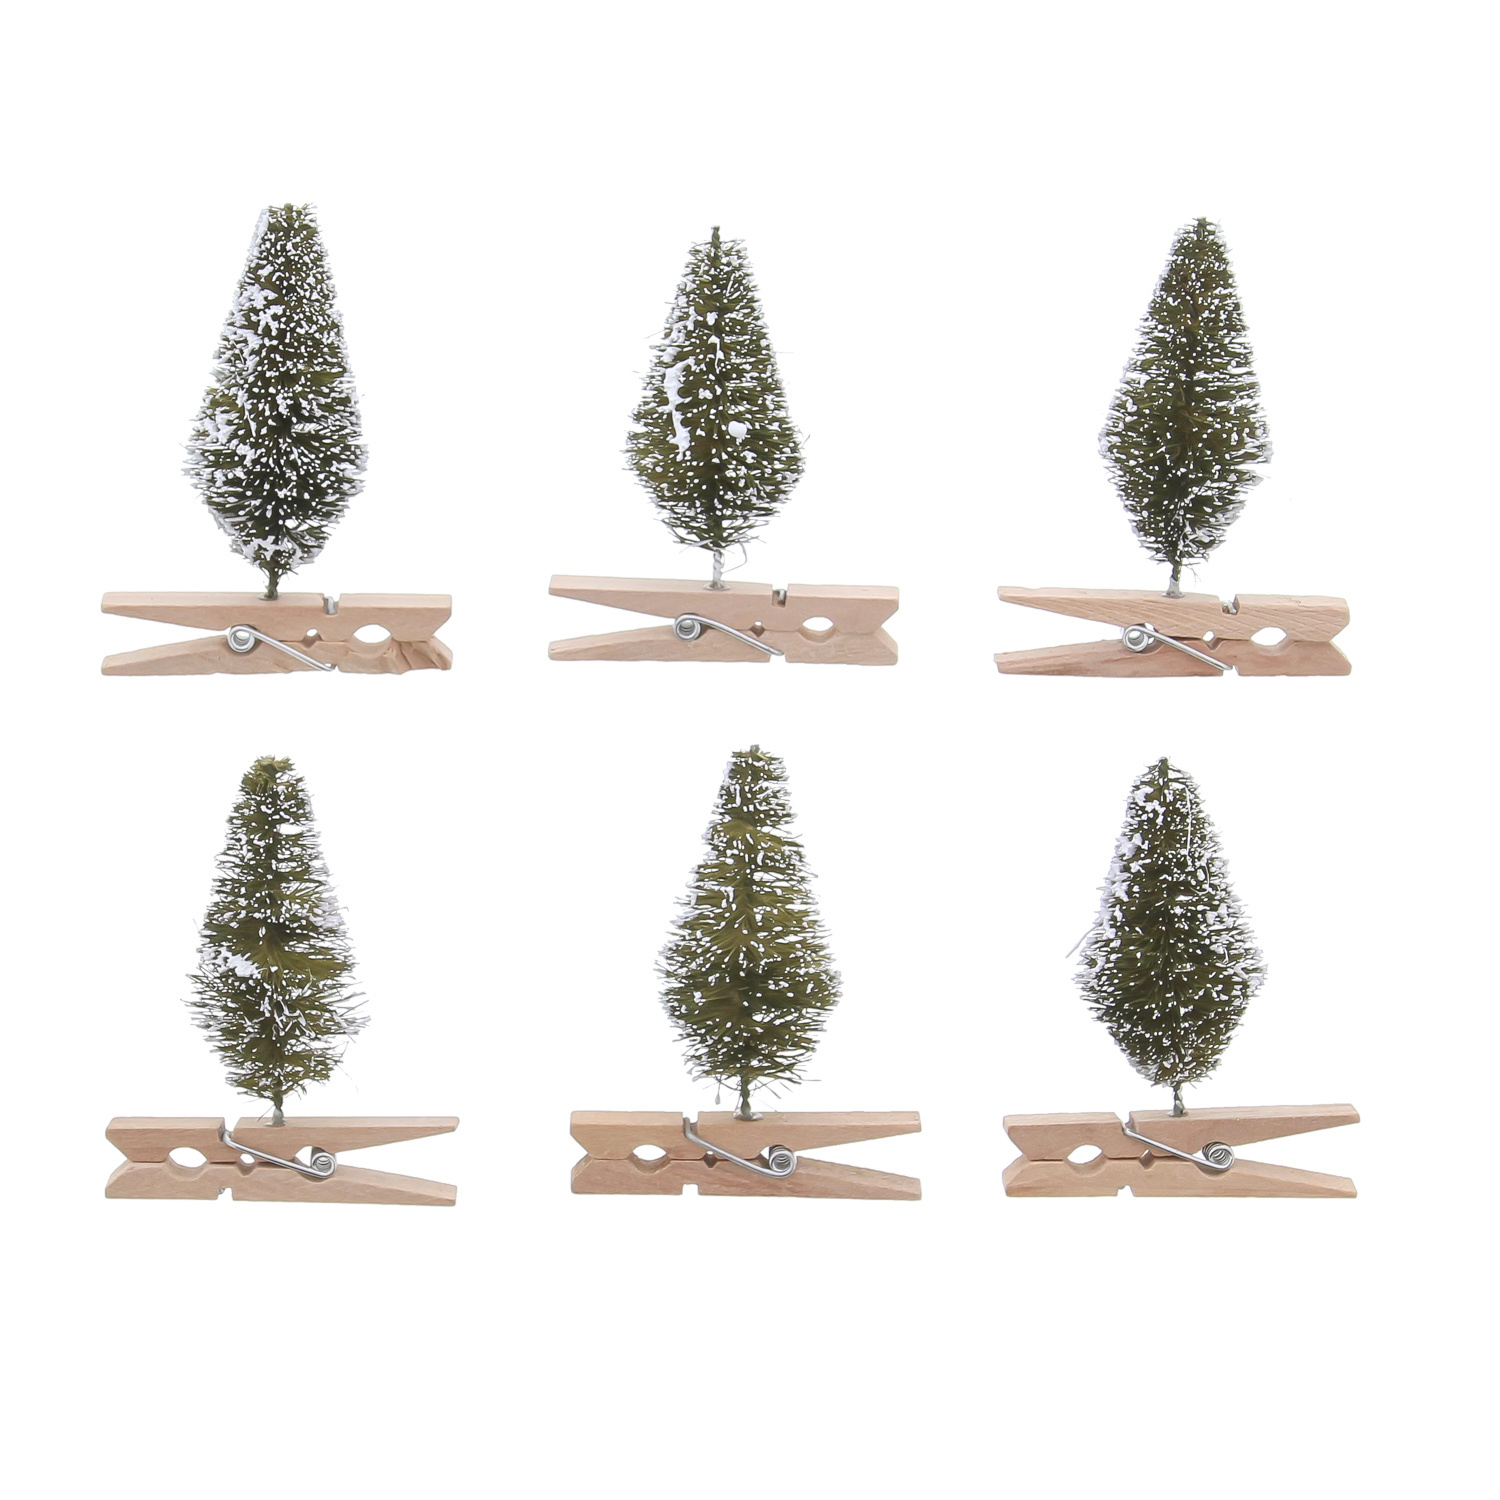 Weihnachtsbaum "Brush" Grün verschneit Klammer - 25*4,8*60mm - 36 Stück